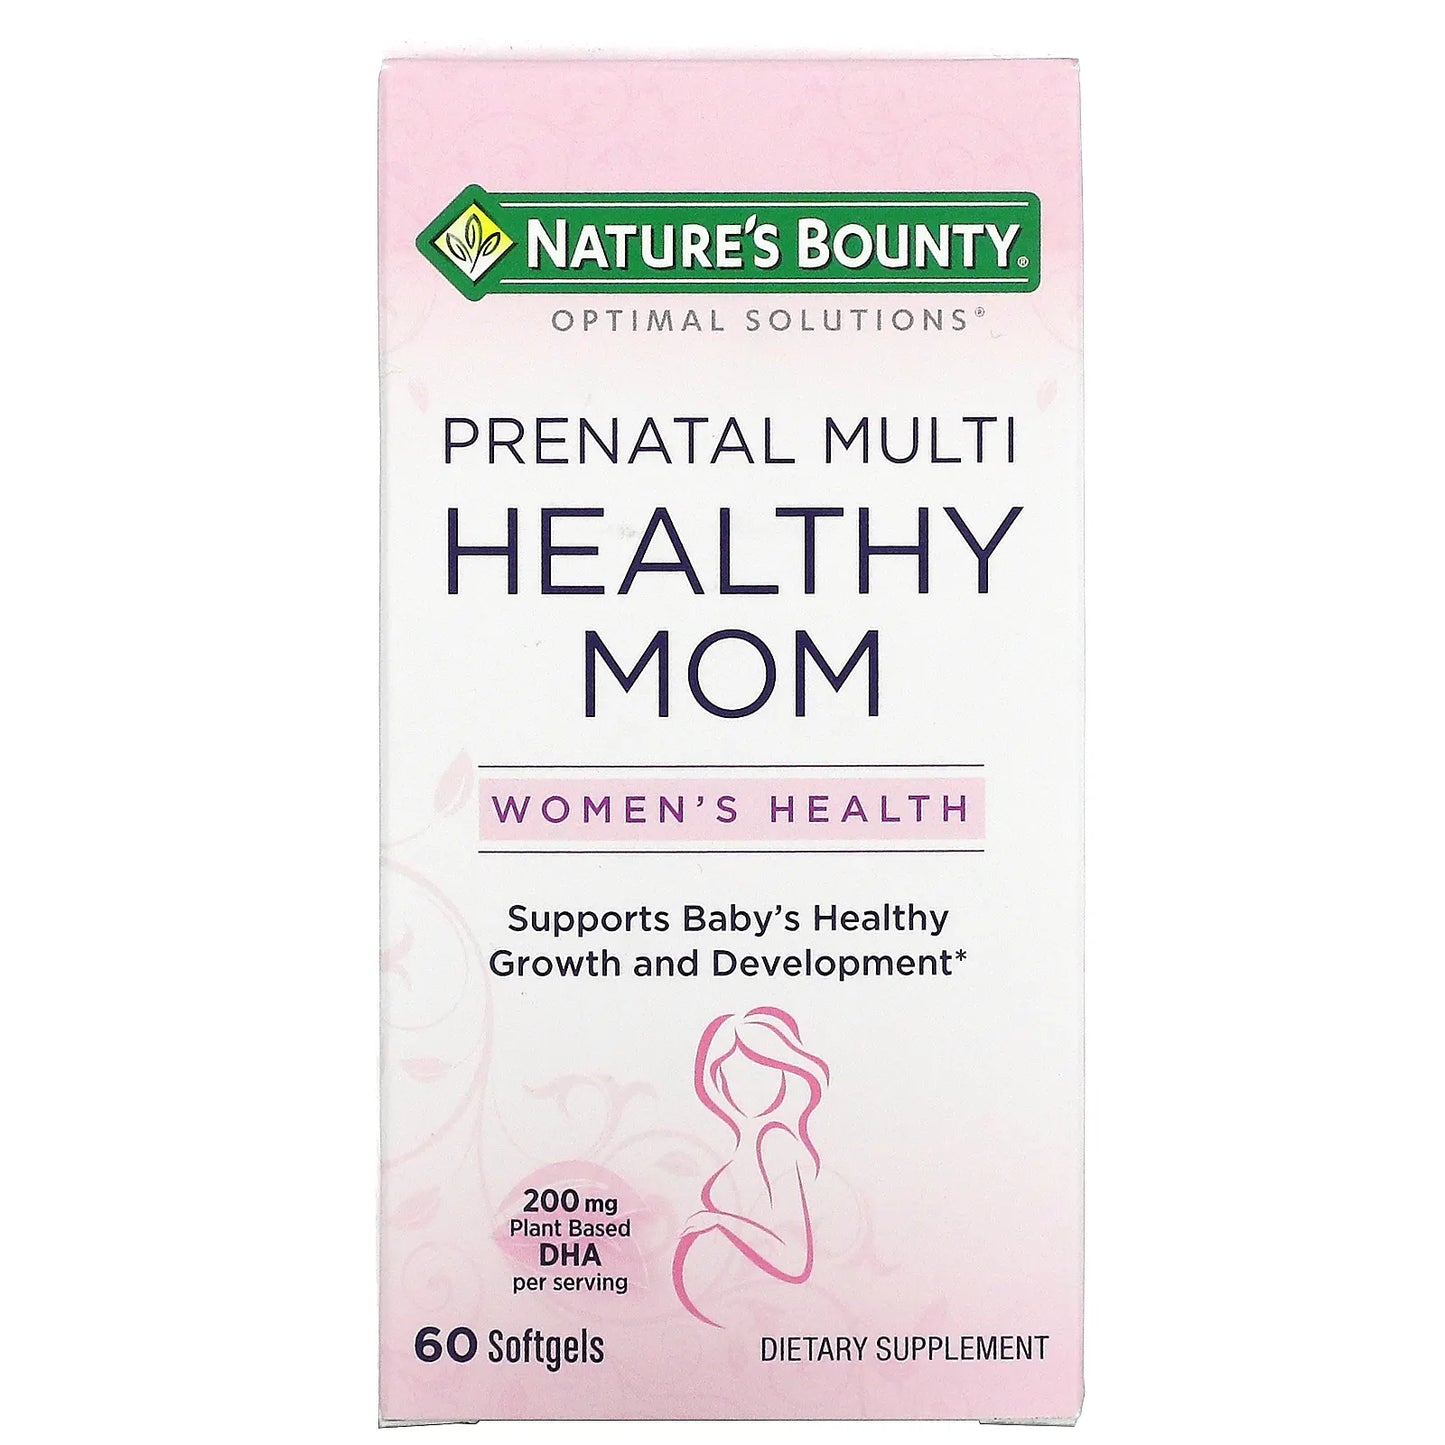 NATURE’S BOUNTY PRENATAL MULTI HEALTHY MOM